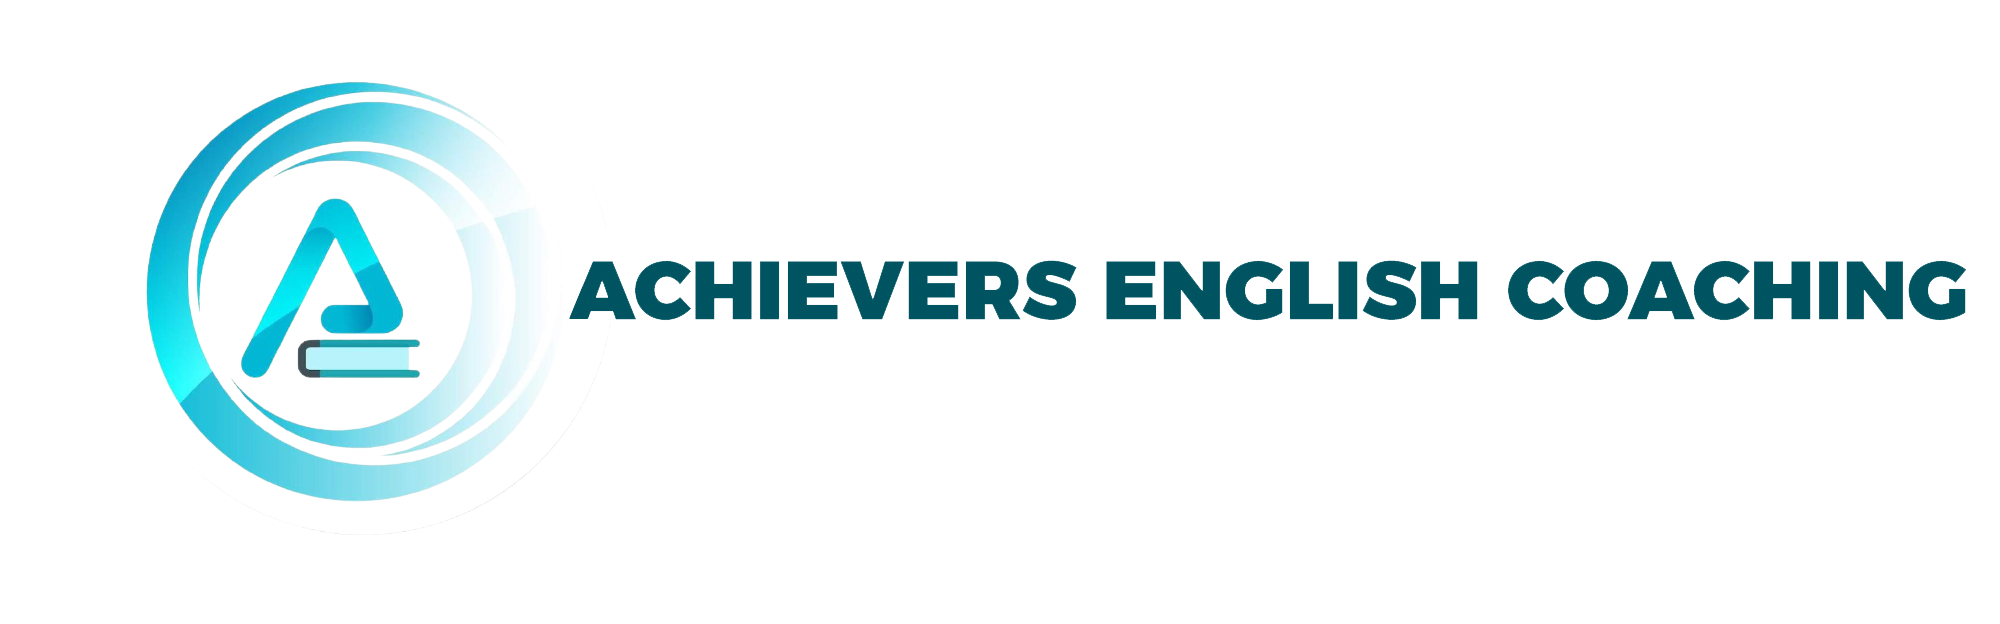 Achievers English Coaching Logo